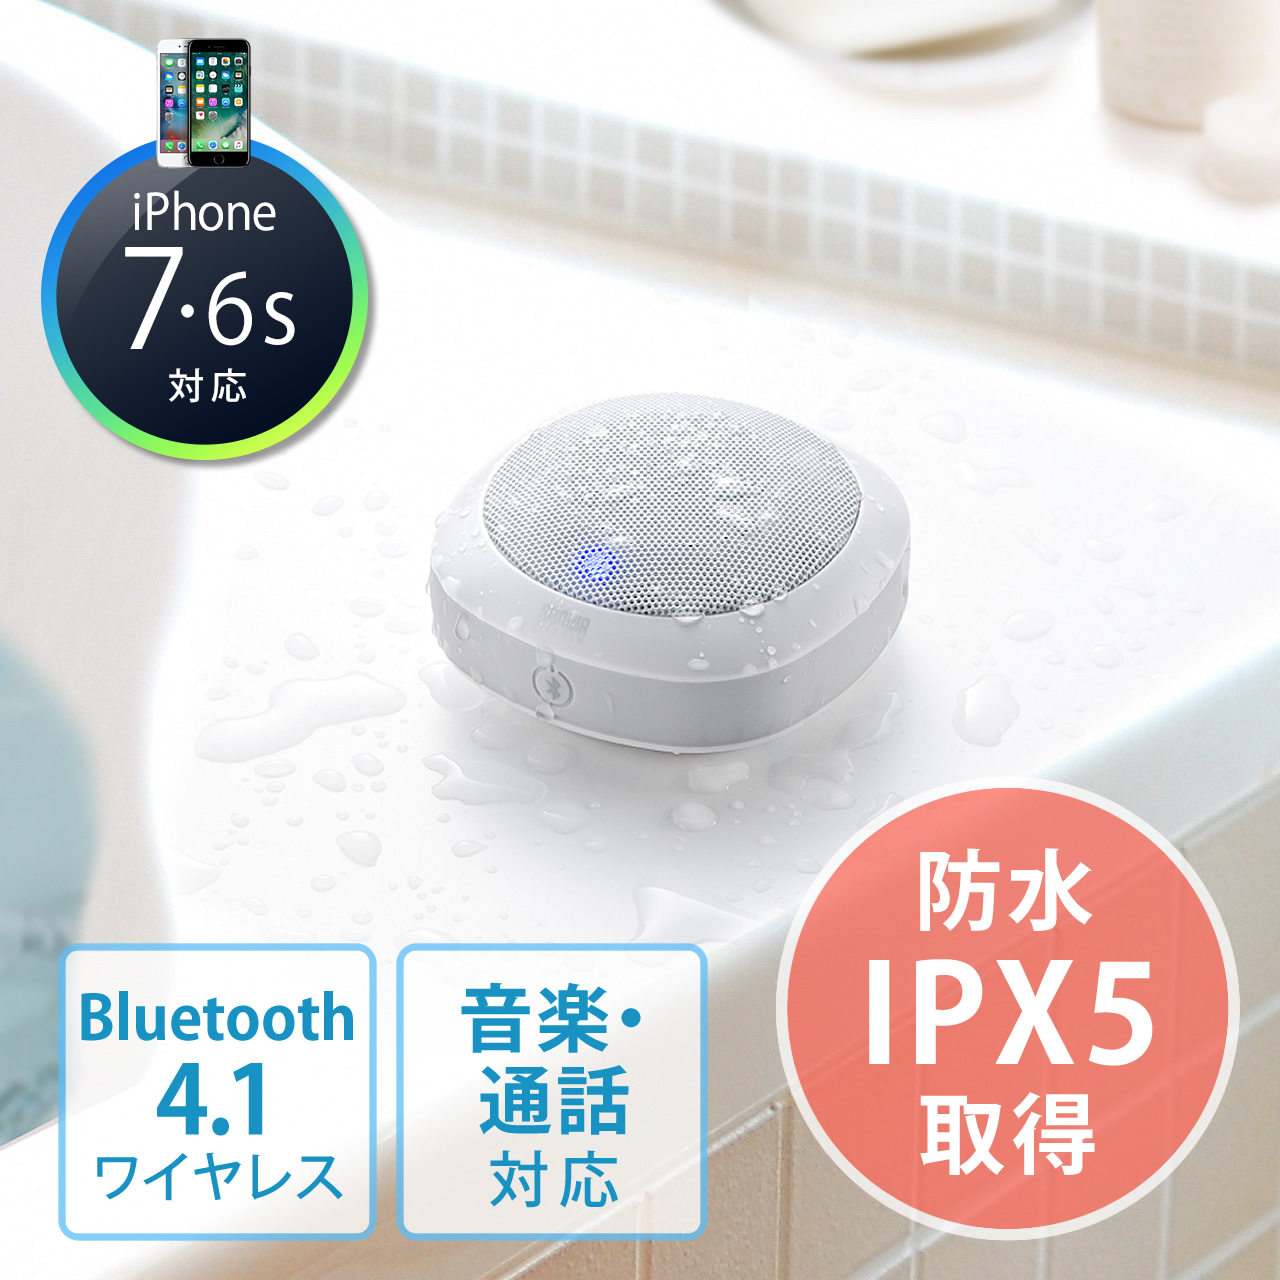 BluetoothCXXs[J[iCXs[J[EBluetooth4.1EhEyEʘbΉEzCgj 400-SP060W